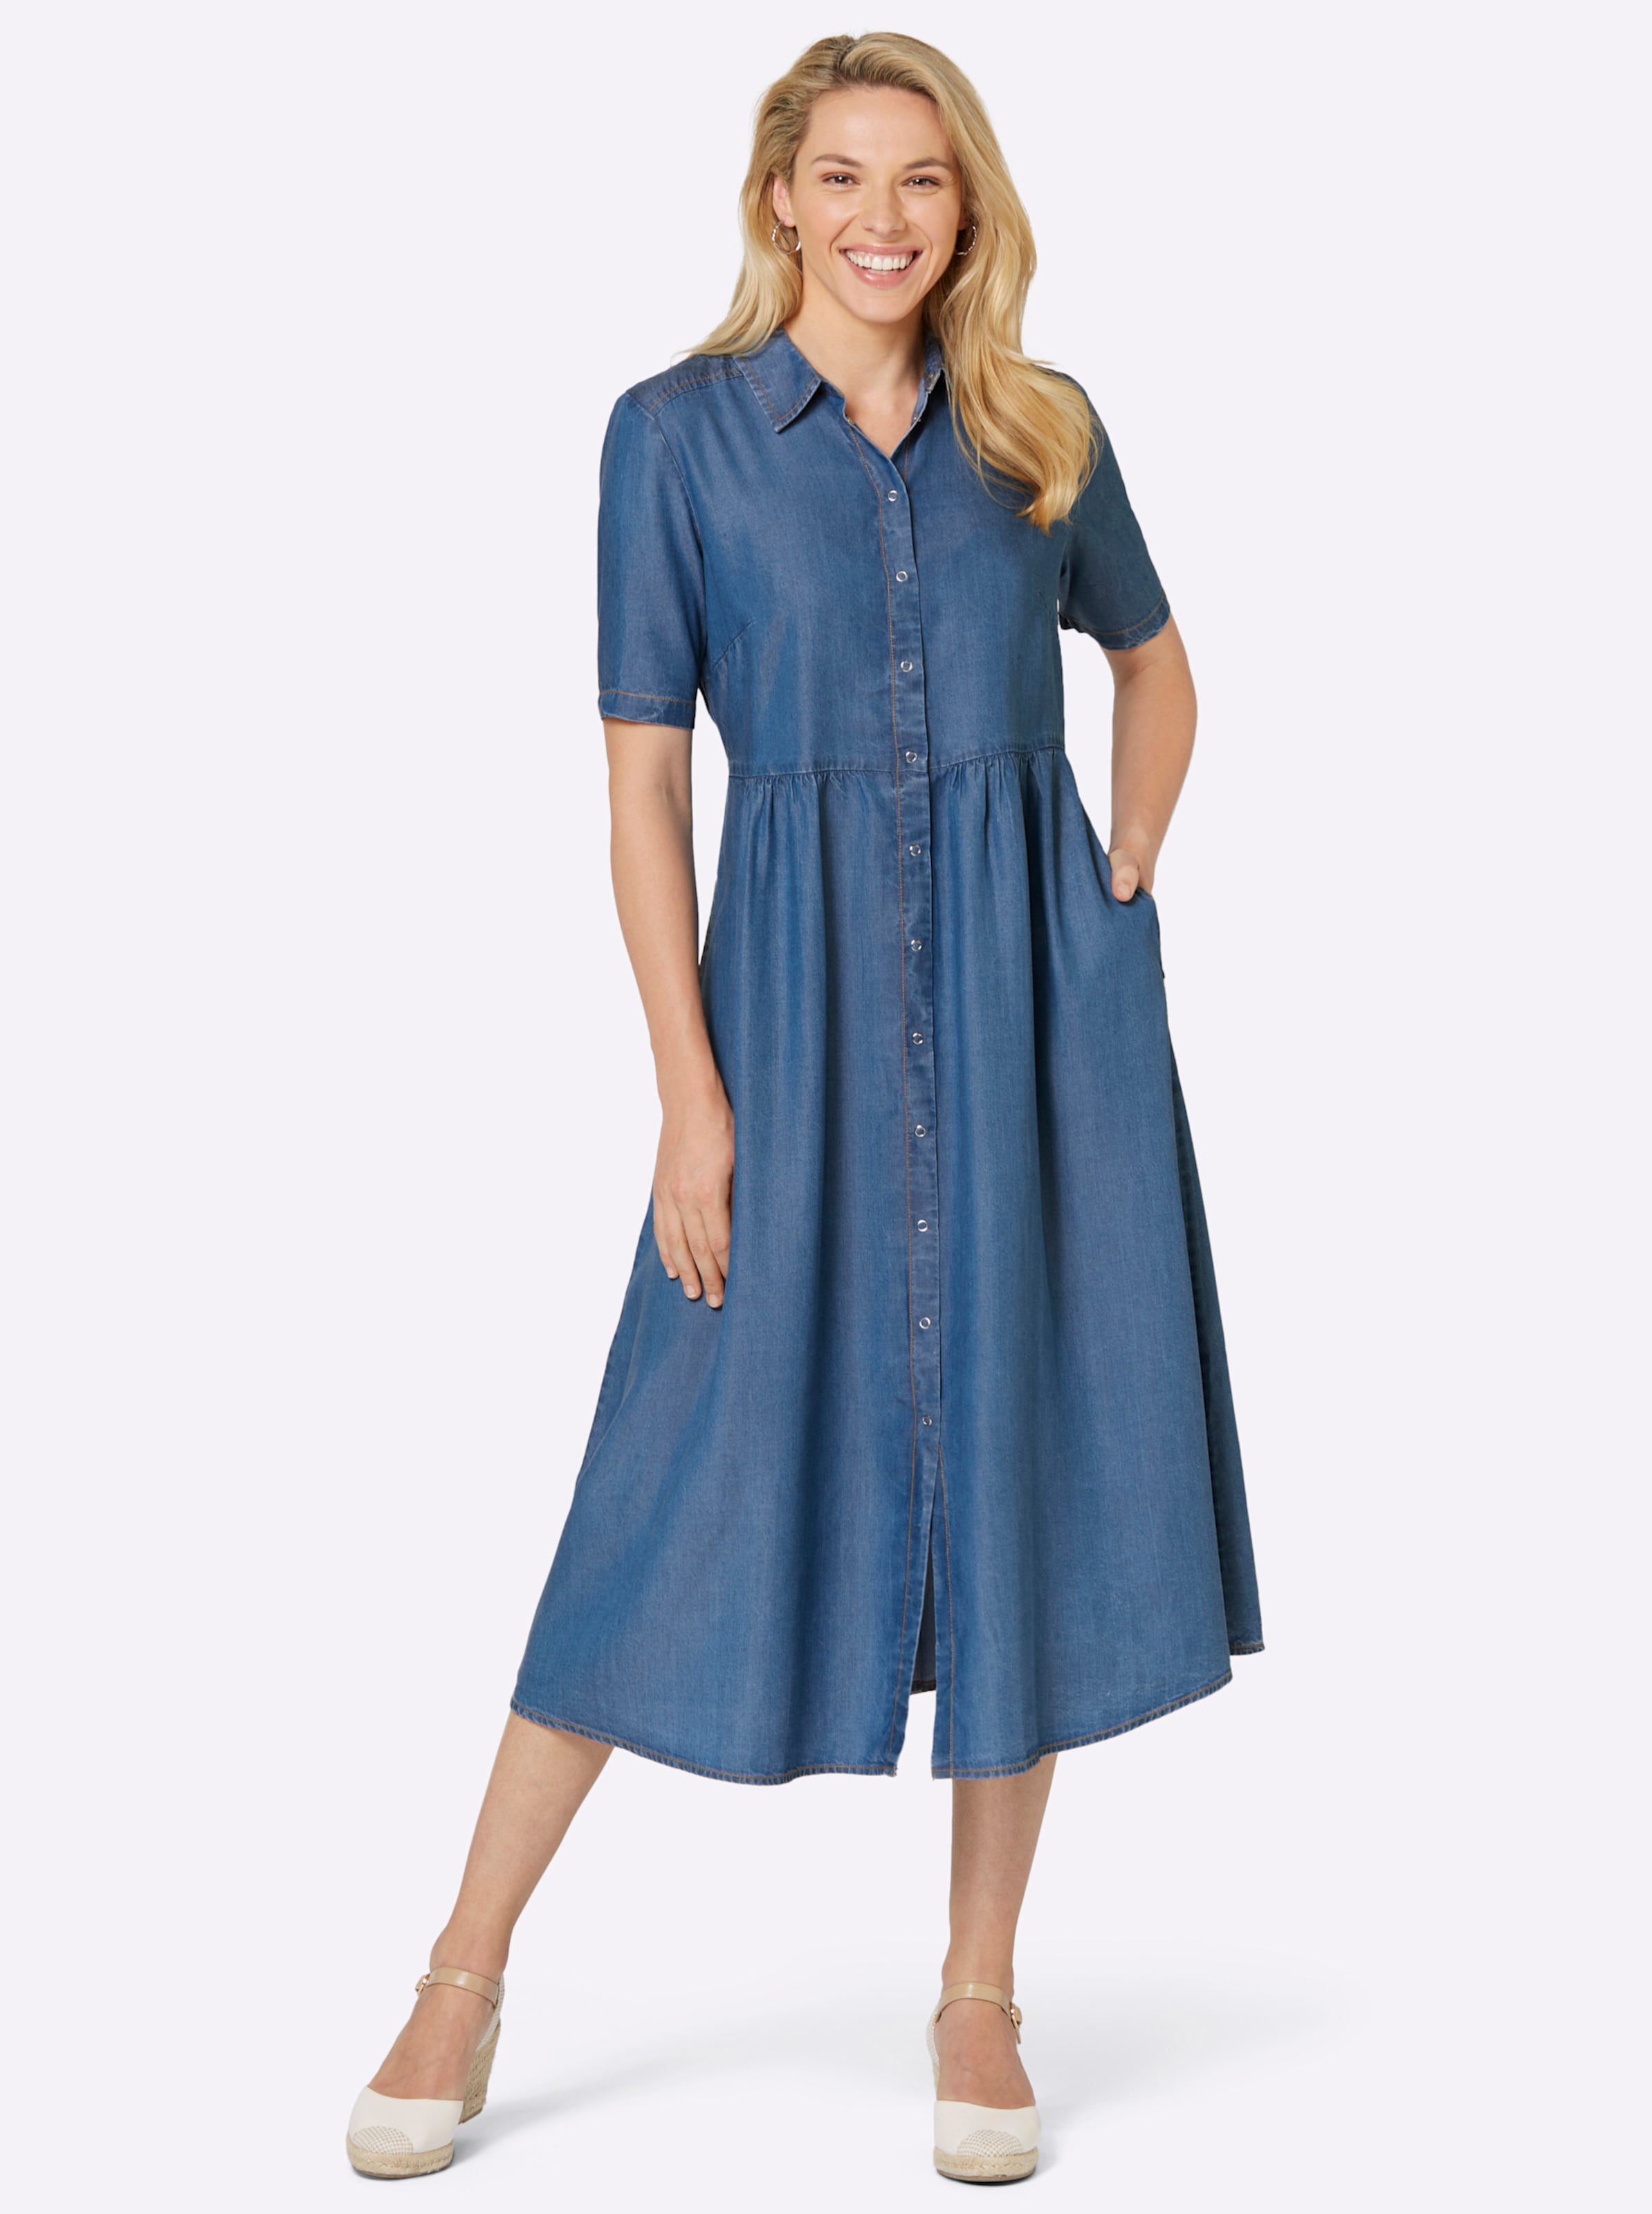 Weich und günstig Kaufen-Kleid in blue-bleached von heine. Kleid in blue-bleached von heine <![CDATA[Locker! Lässig! Lieblingsstückverdächtig! Schmeichelnd weites Kleid in angenehm weicher und leichter Lyocell-Qualität in Denim-Optik. Mit Hemdkragen und durchgehender Druckkno